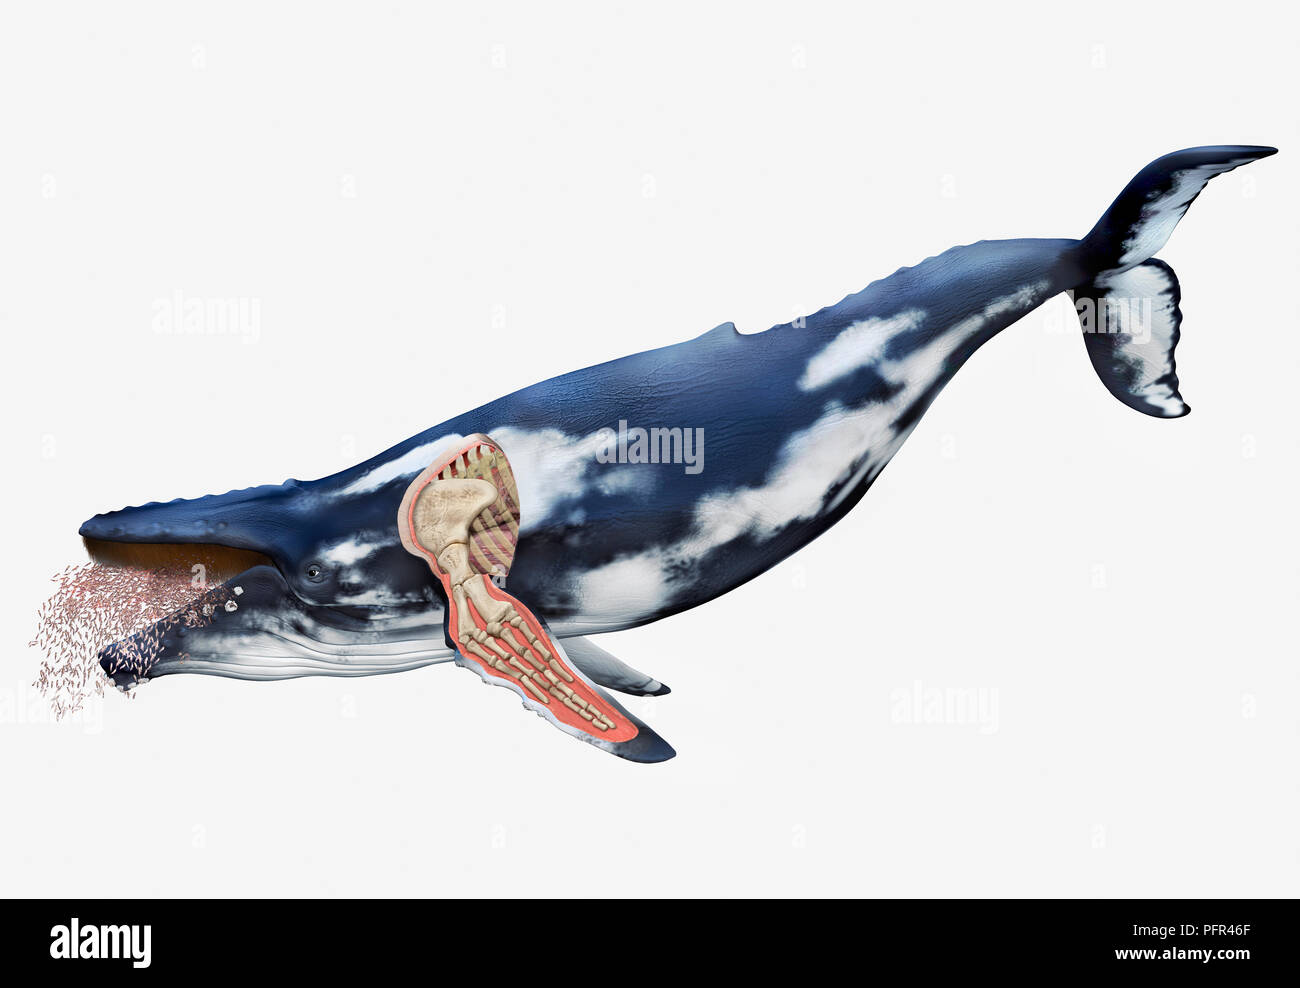 Illustrazione Digitale della balena con la struttura ossea di alette visibile, spaccato Foto Stock